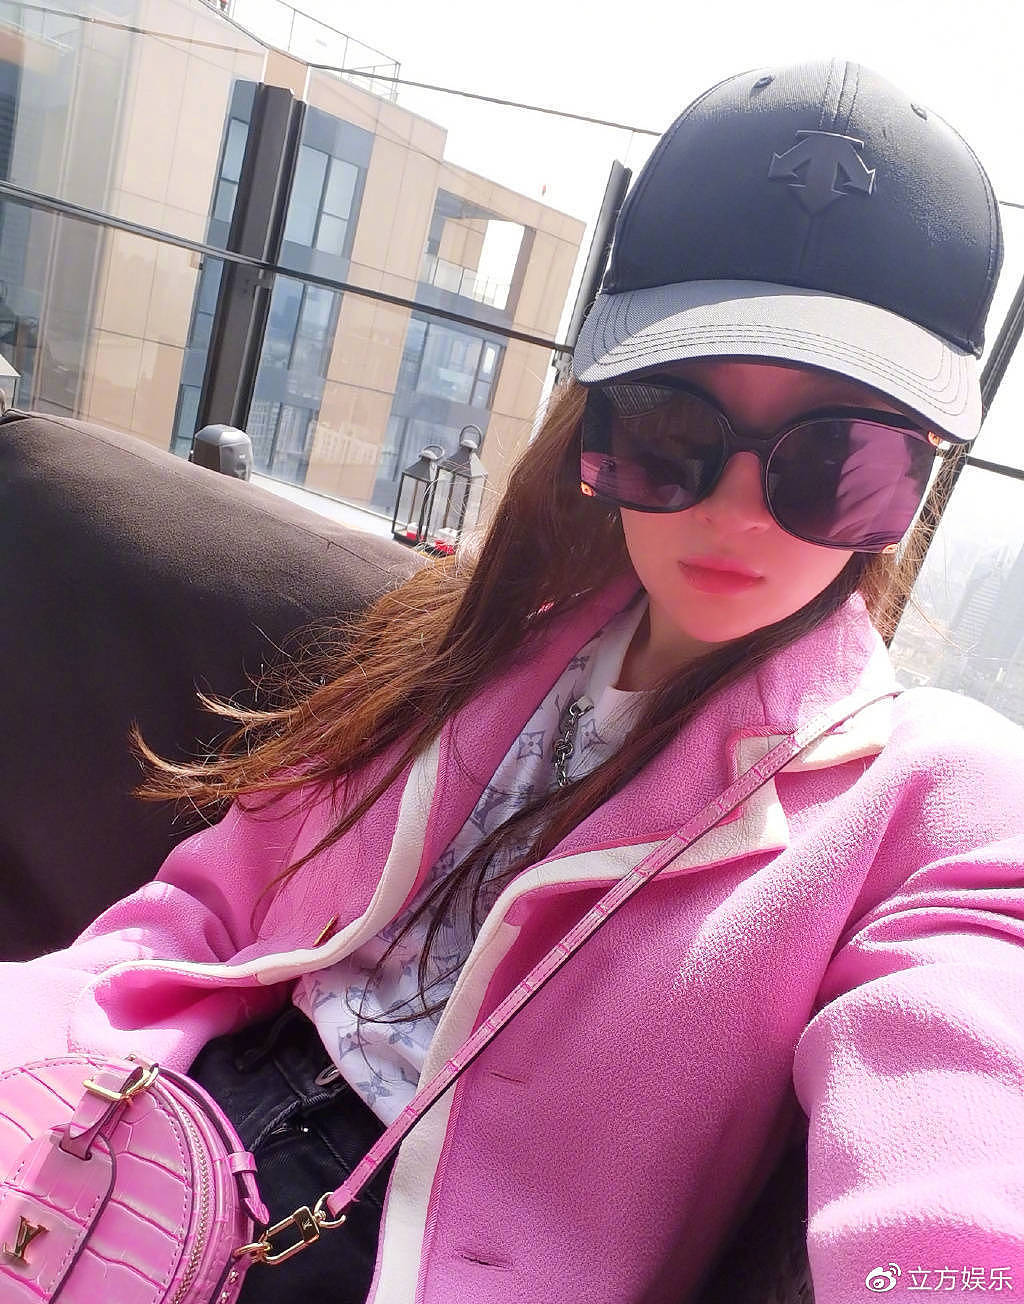 刘亦菲分享自拍美照 戴墨镜穿粉色外套甜美酷飒 - 1